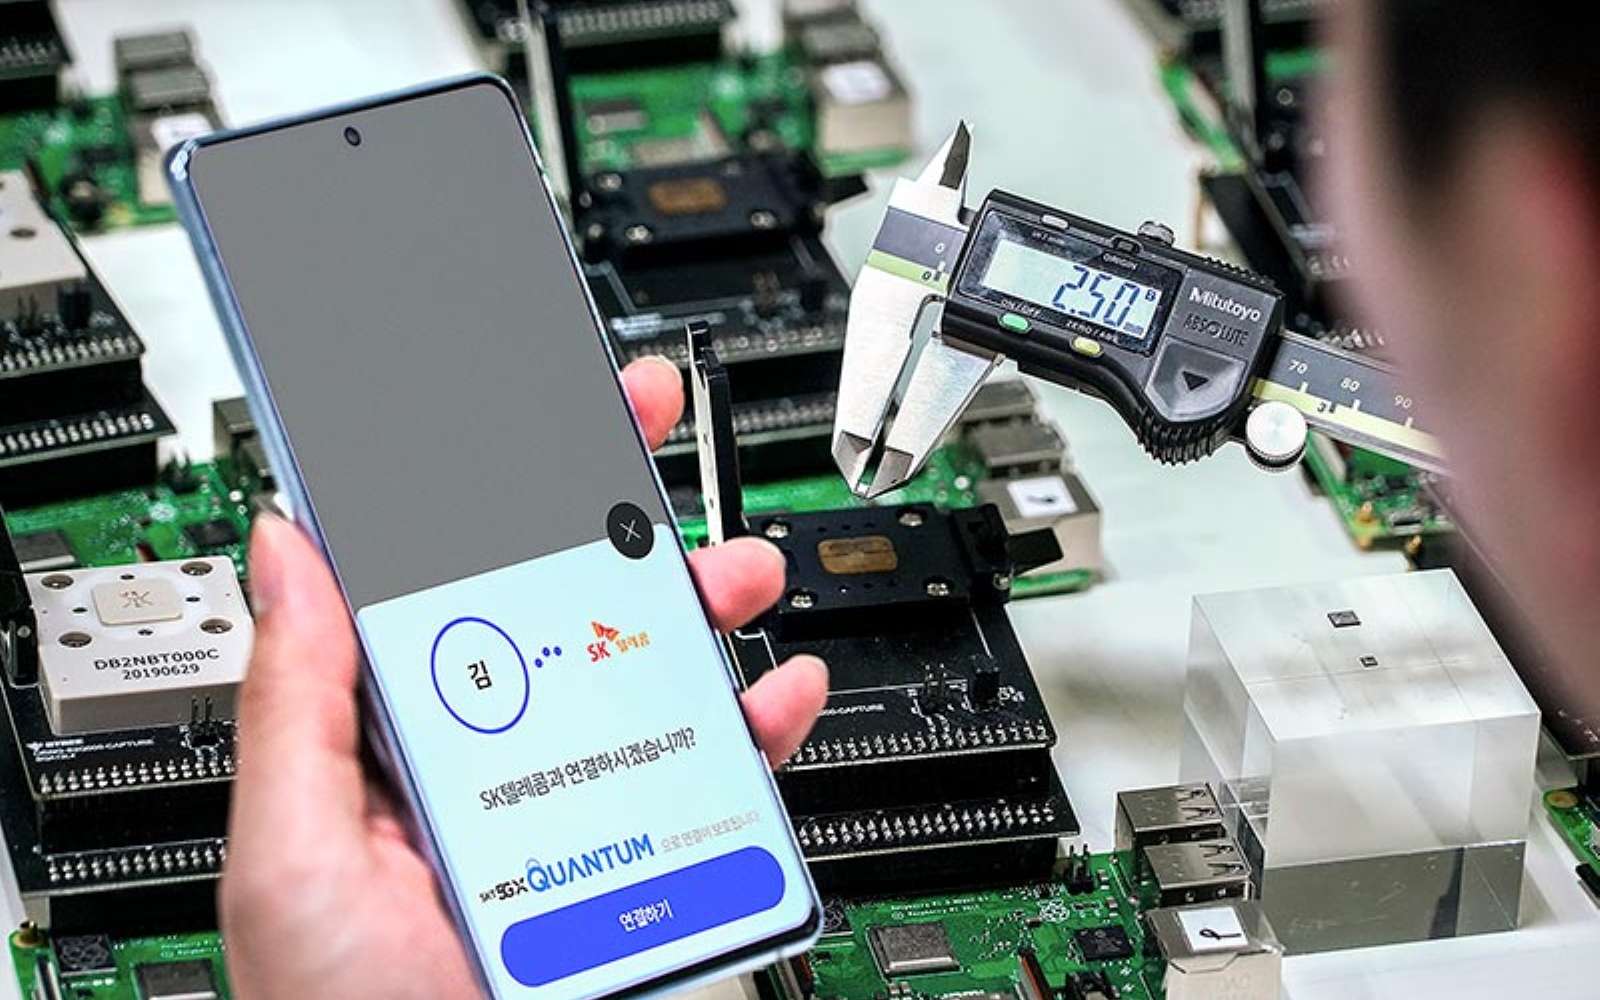 Basé sur un Samsung Galaxy A, le mobile exploite une minuscule puce permettant de générer des nombres aléatoires grâce à une technologie quantique. © SK Telecom